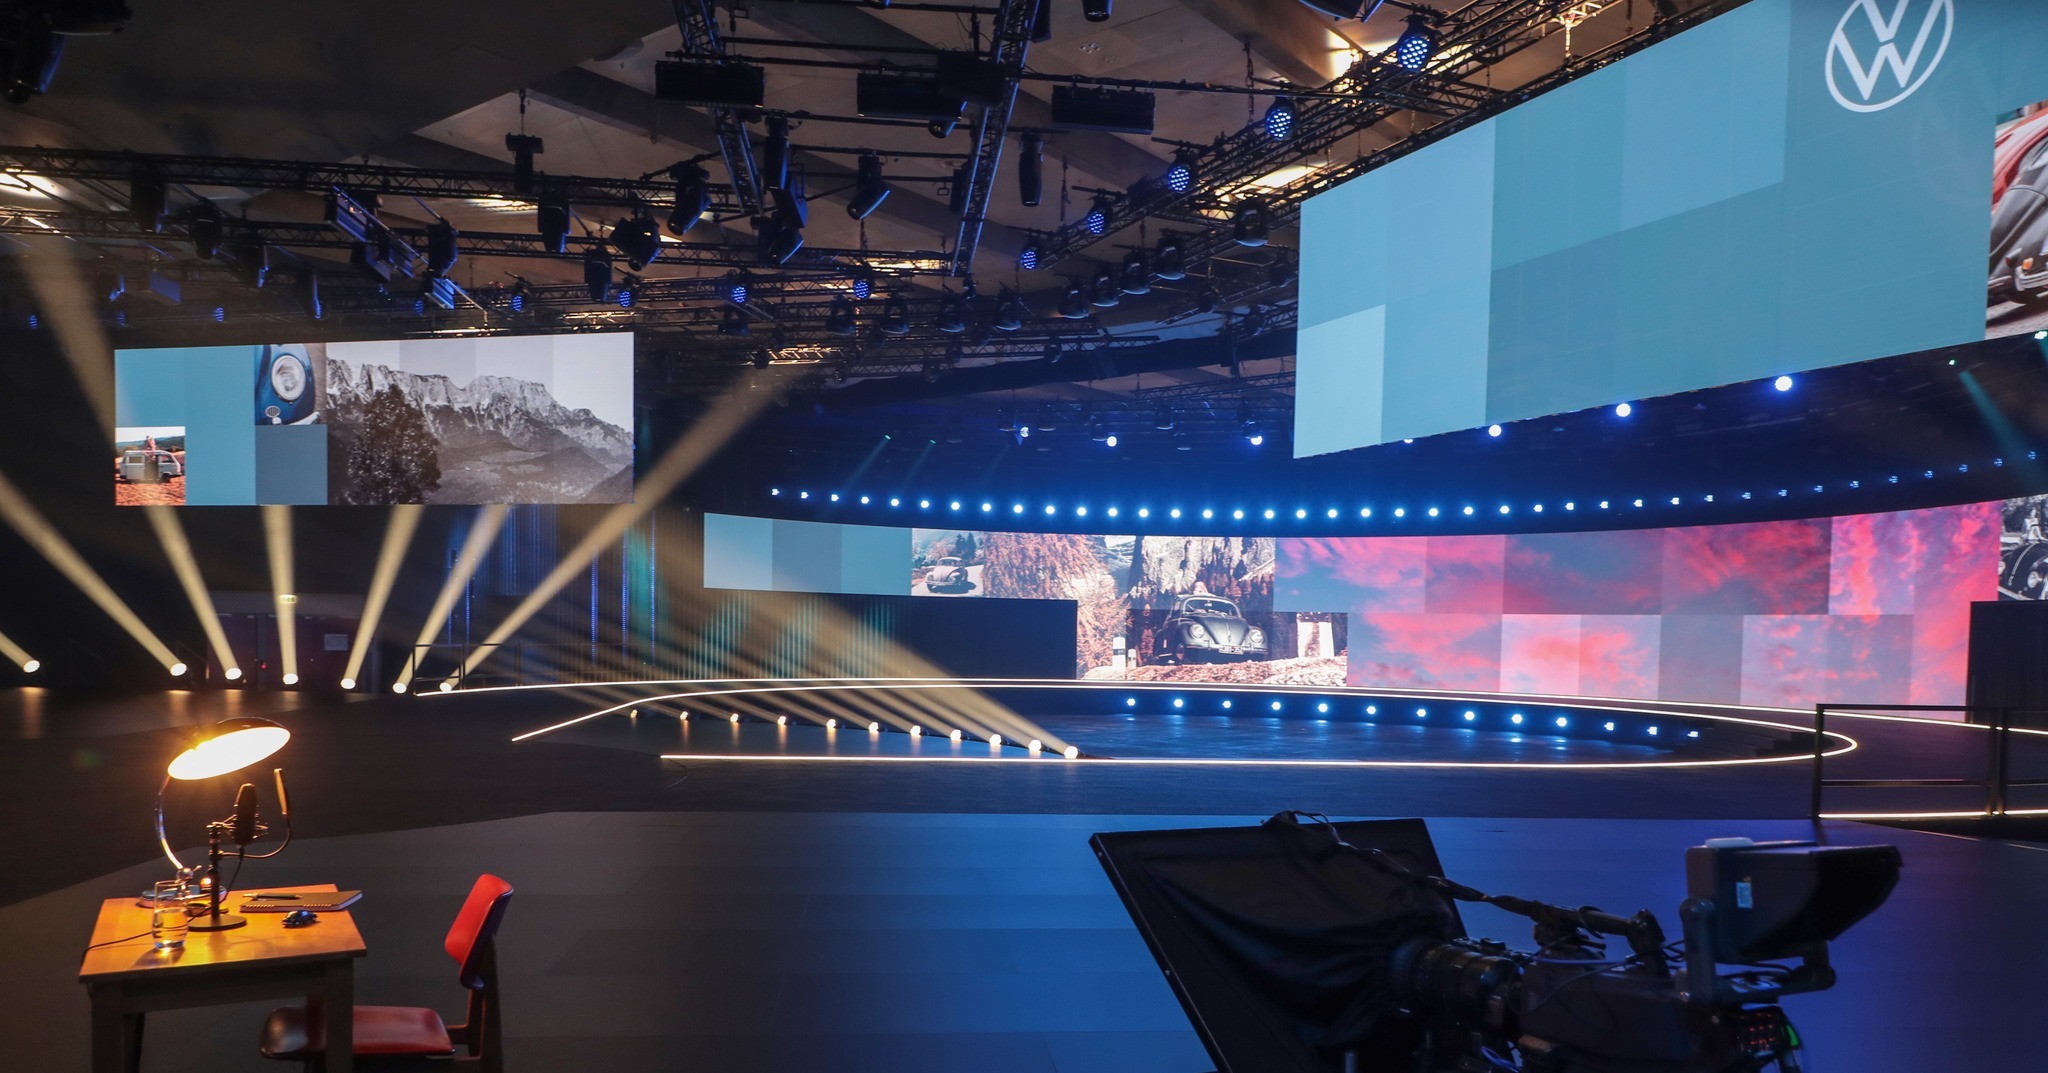 Als führender Anbieter von Veranstaltungstechnik lieferte PRG Rigging, Beleuchtung, Audio- und Videotechnik sowie Intercom-Technik zur Weltpremiere des Showcars "ID.2all" von VW in Hamburg.